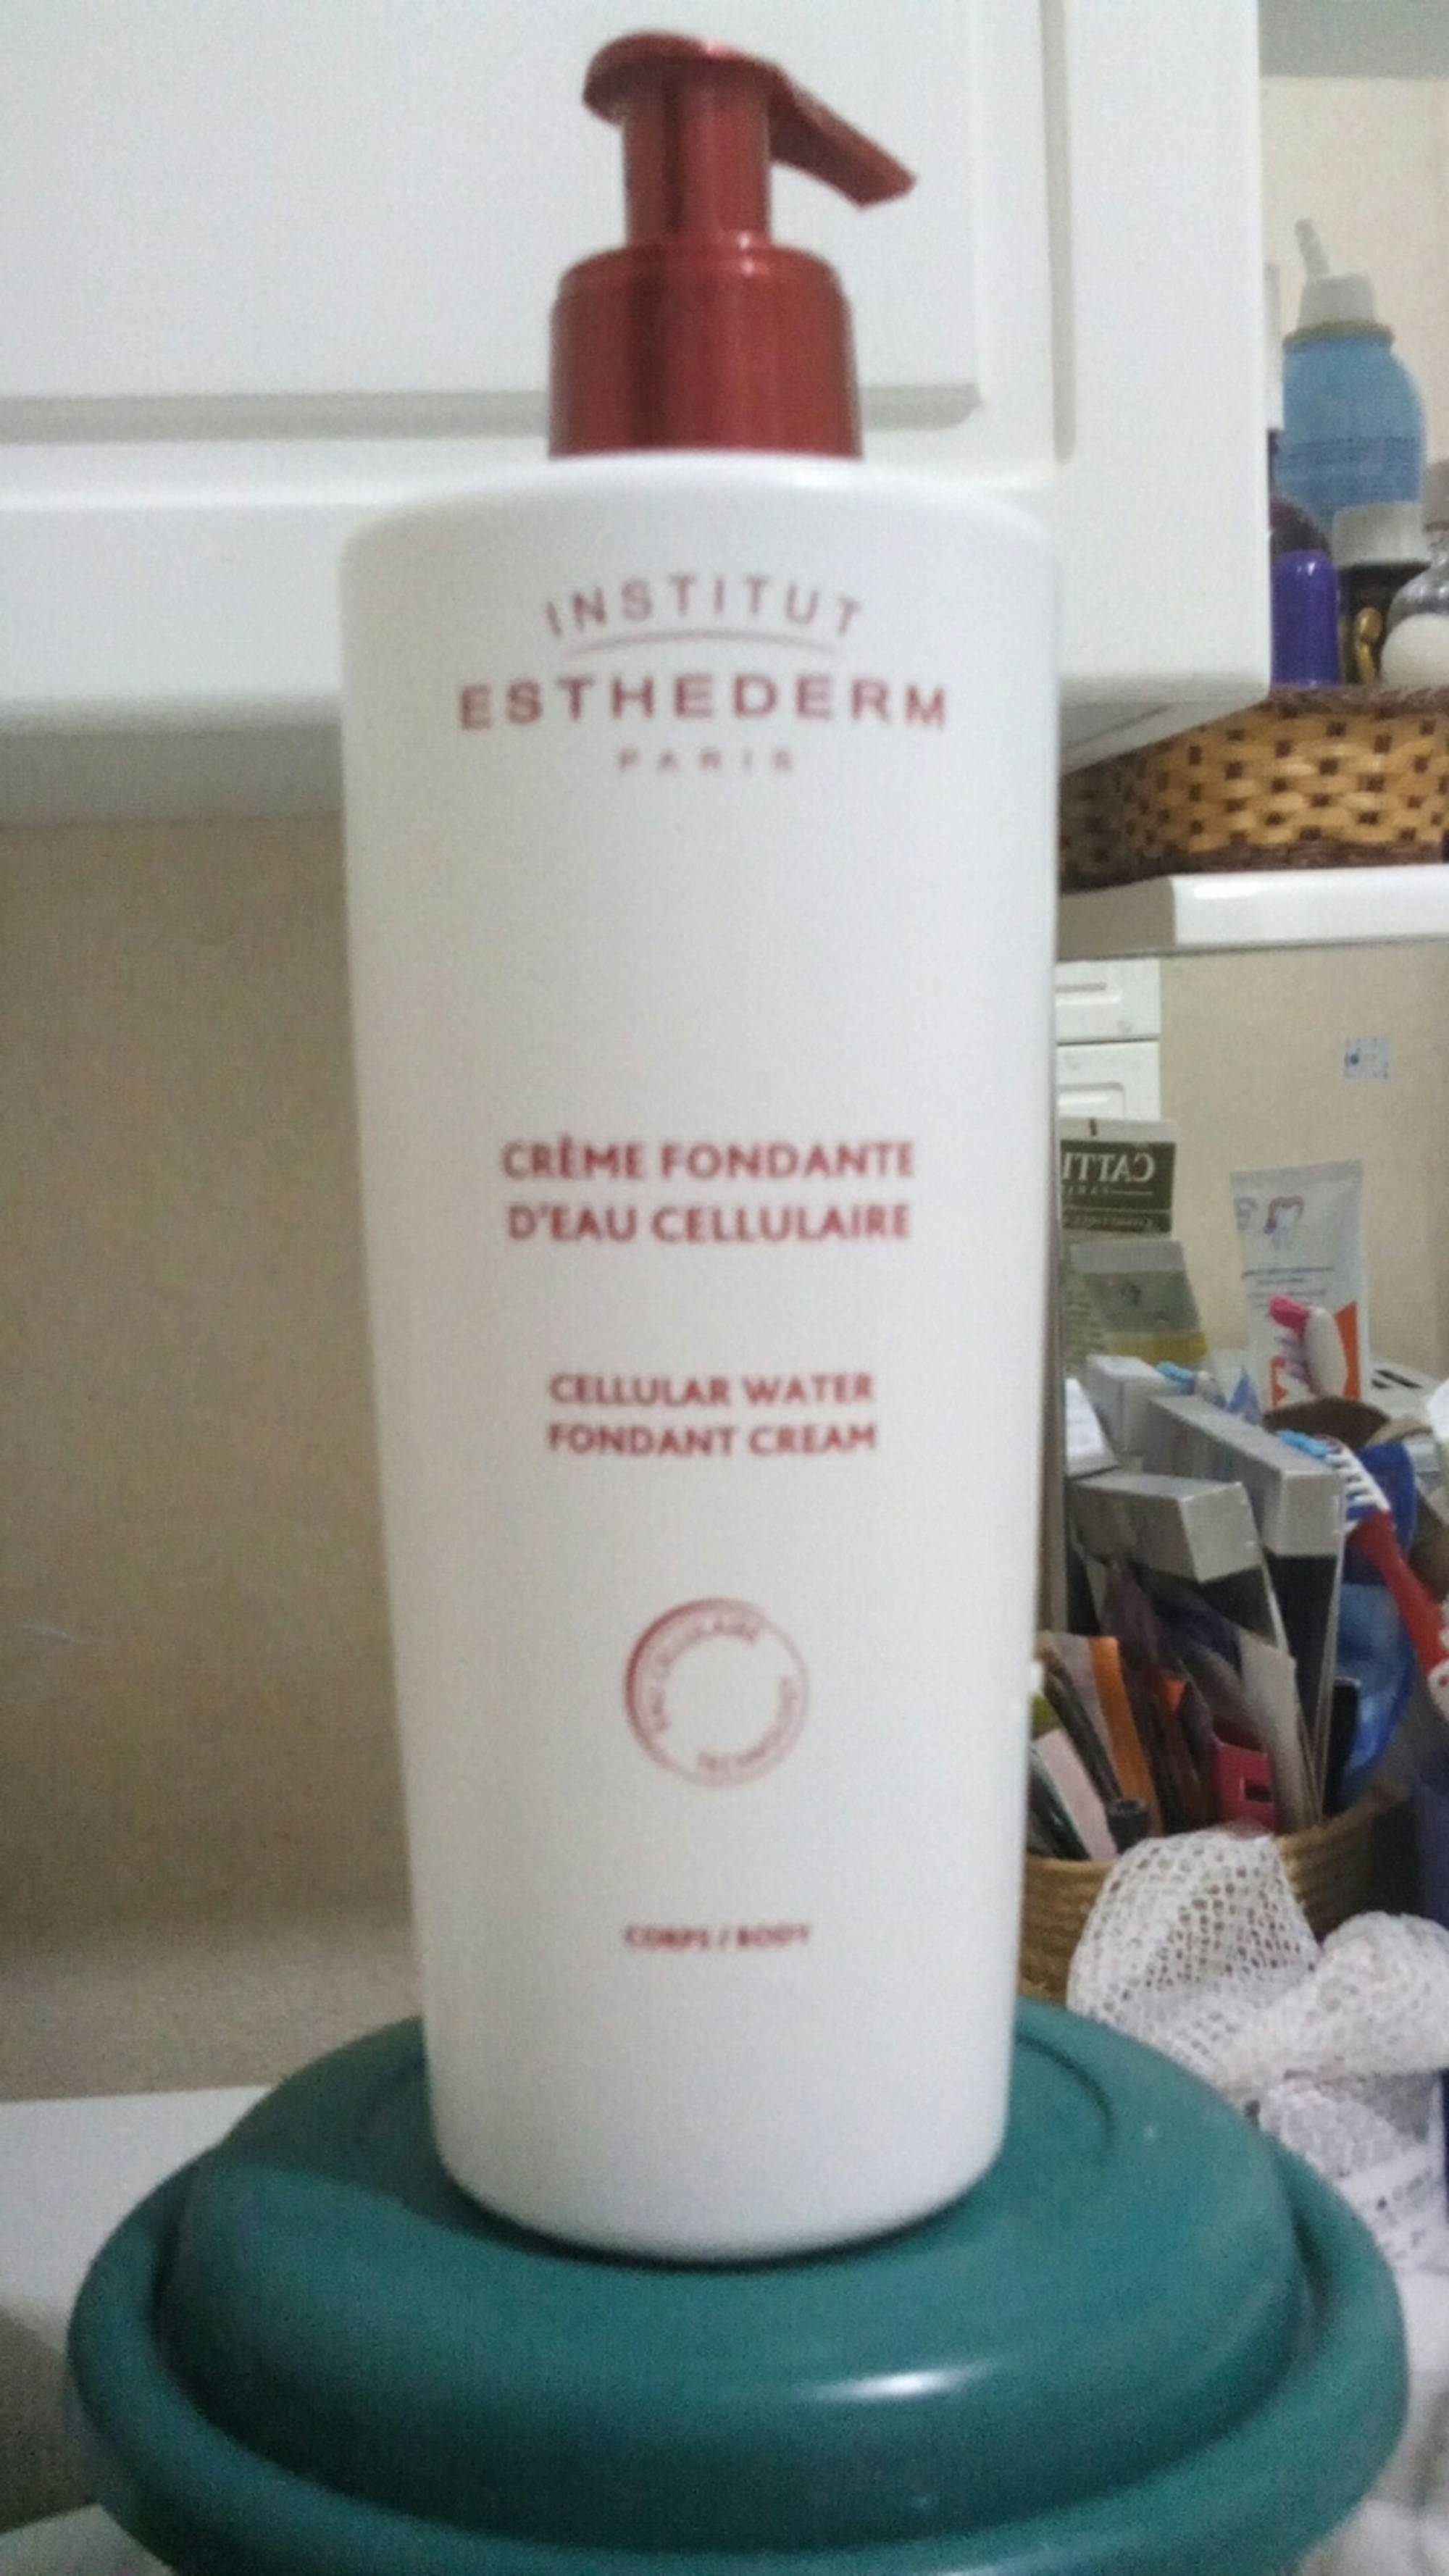 ESTHEDERM - Crème fondante d'eau cellulaire 